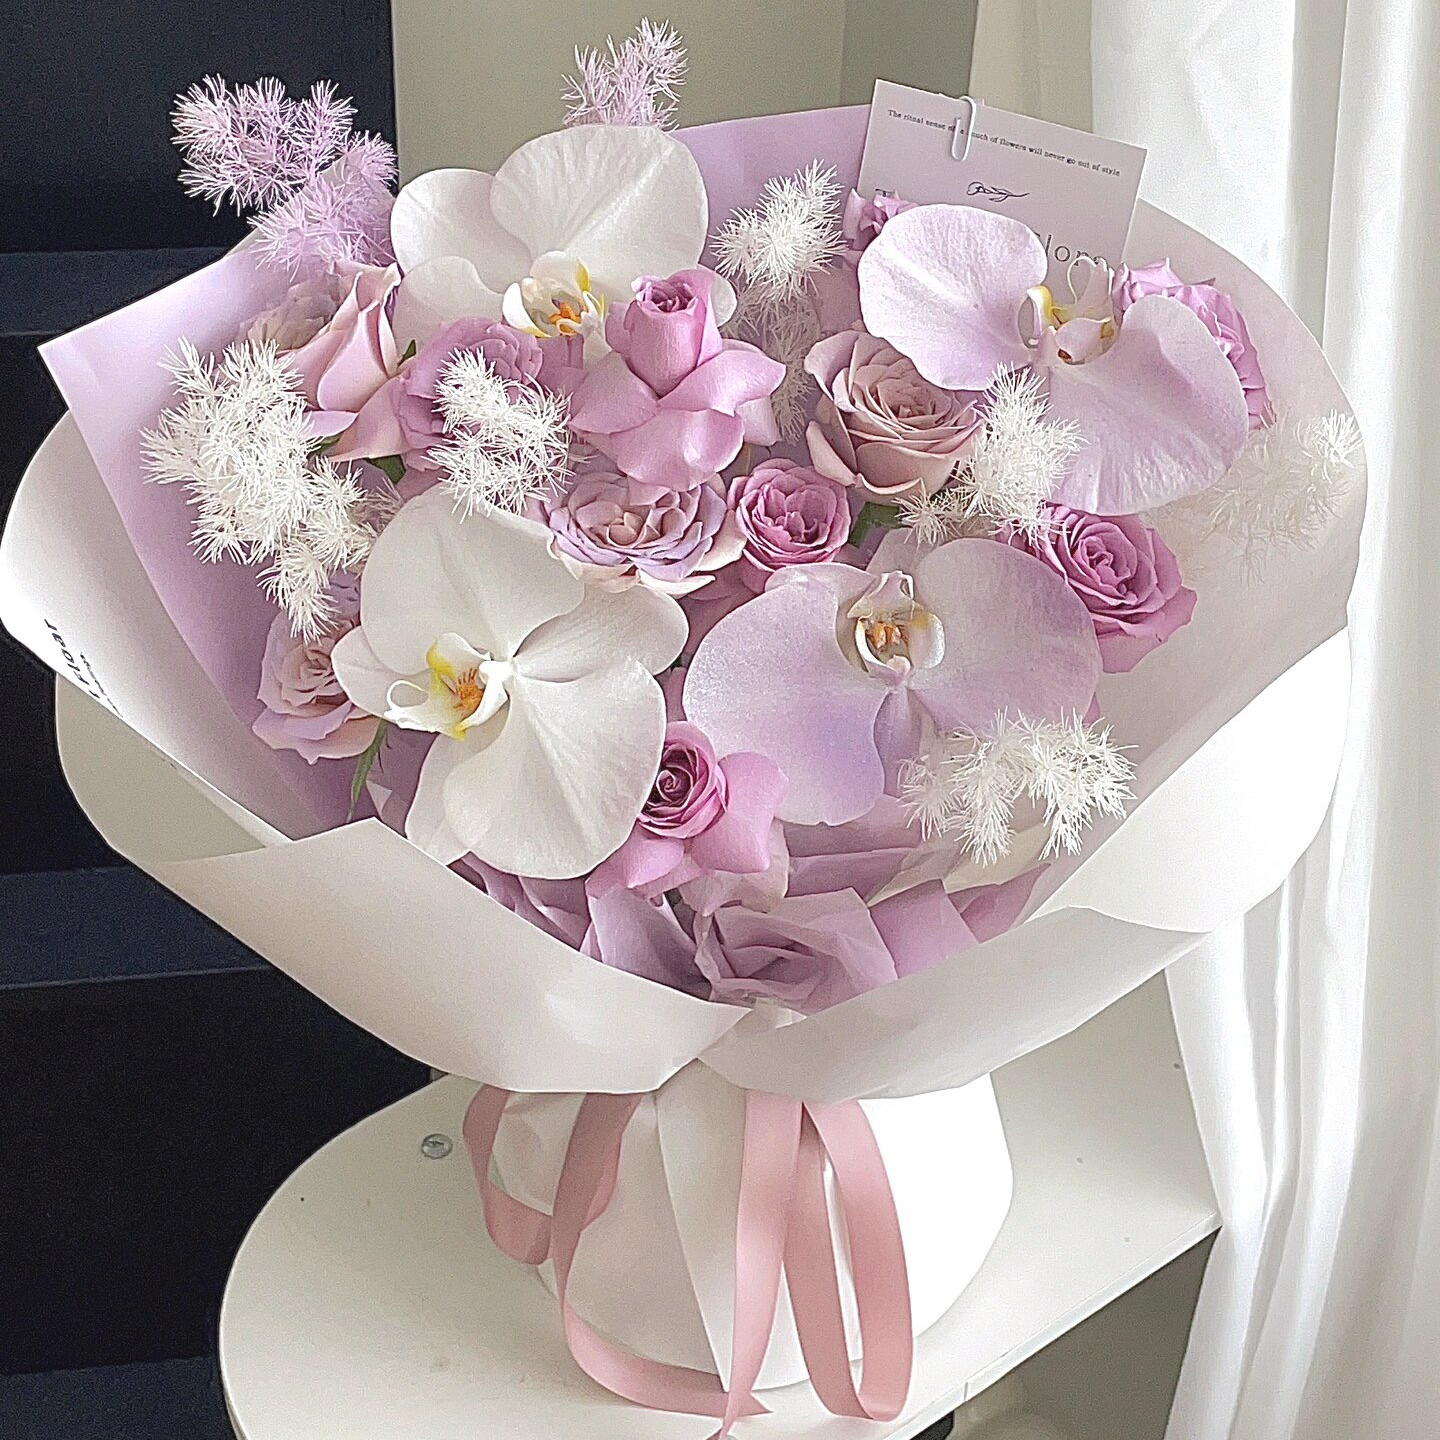 海洋之歌紫玫瑰韩式花束深圳龙华花店鲜花速递母亲节生日友情送花